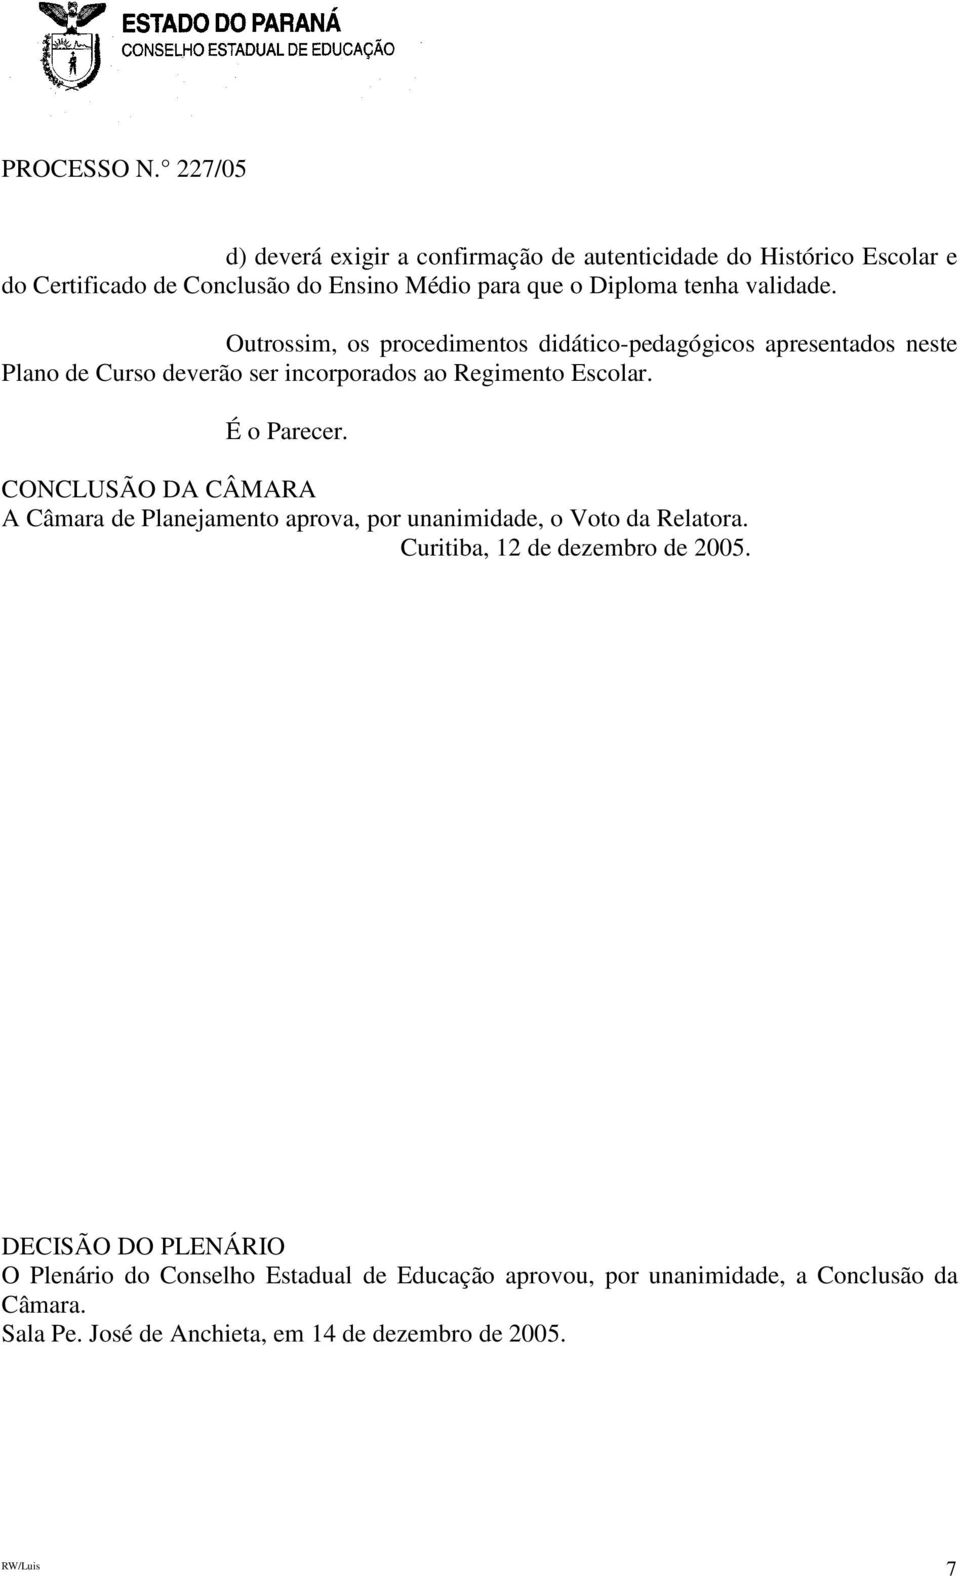 É o Parecer. CONCLUSÃO DA CÂMARA A Câmara de Planejamento aprova, por unanimidade, o Voto da Relatora. Curitiba, 12 de dezembro de 2005.